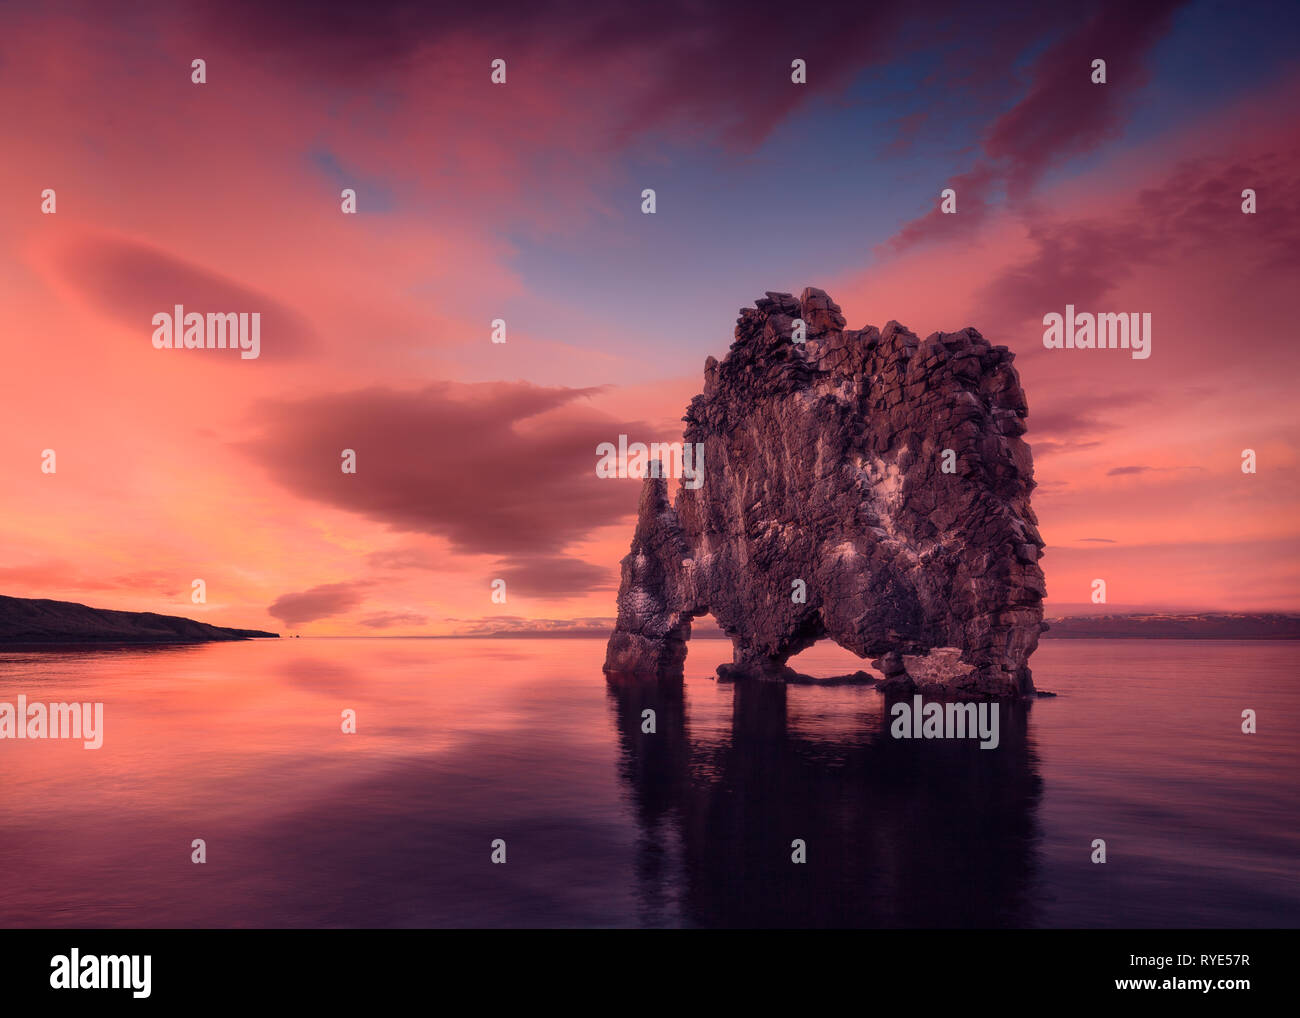 Photo de paysage célèbre rocher au beau coucher de soleil idyllique d'une réflexion au crépuscule Banque D'Images